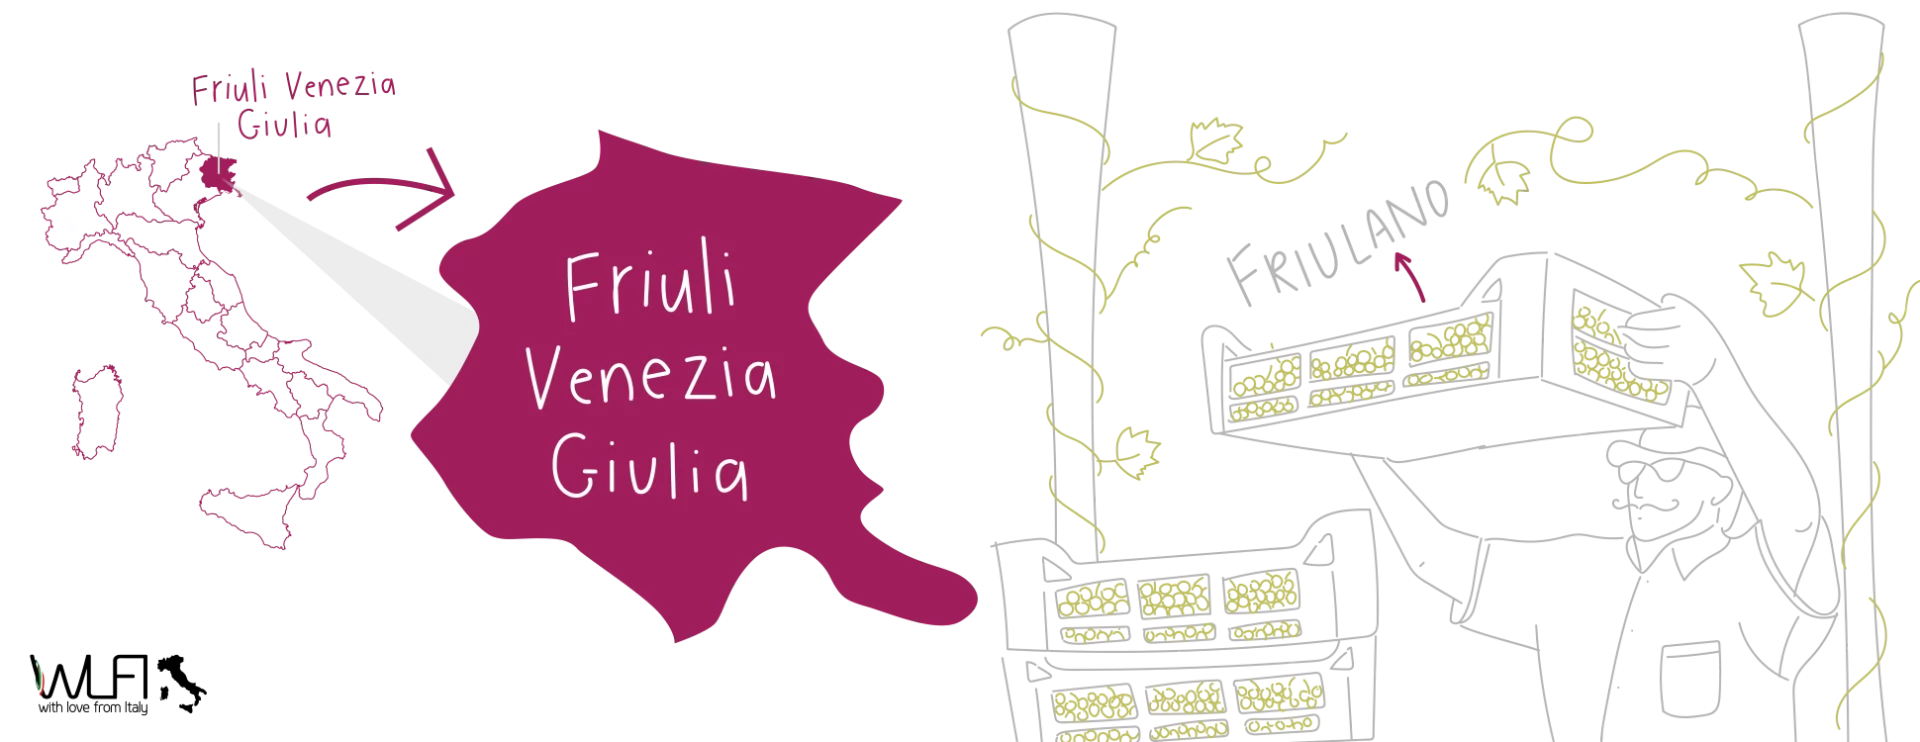 Friuli Venezia Giulia Map - With Love From Italy